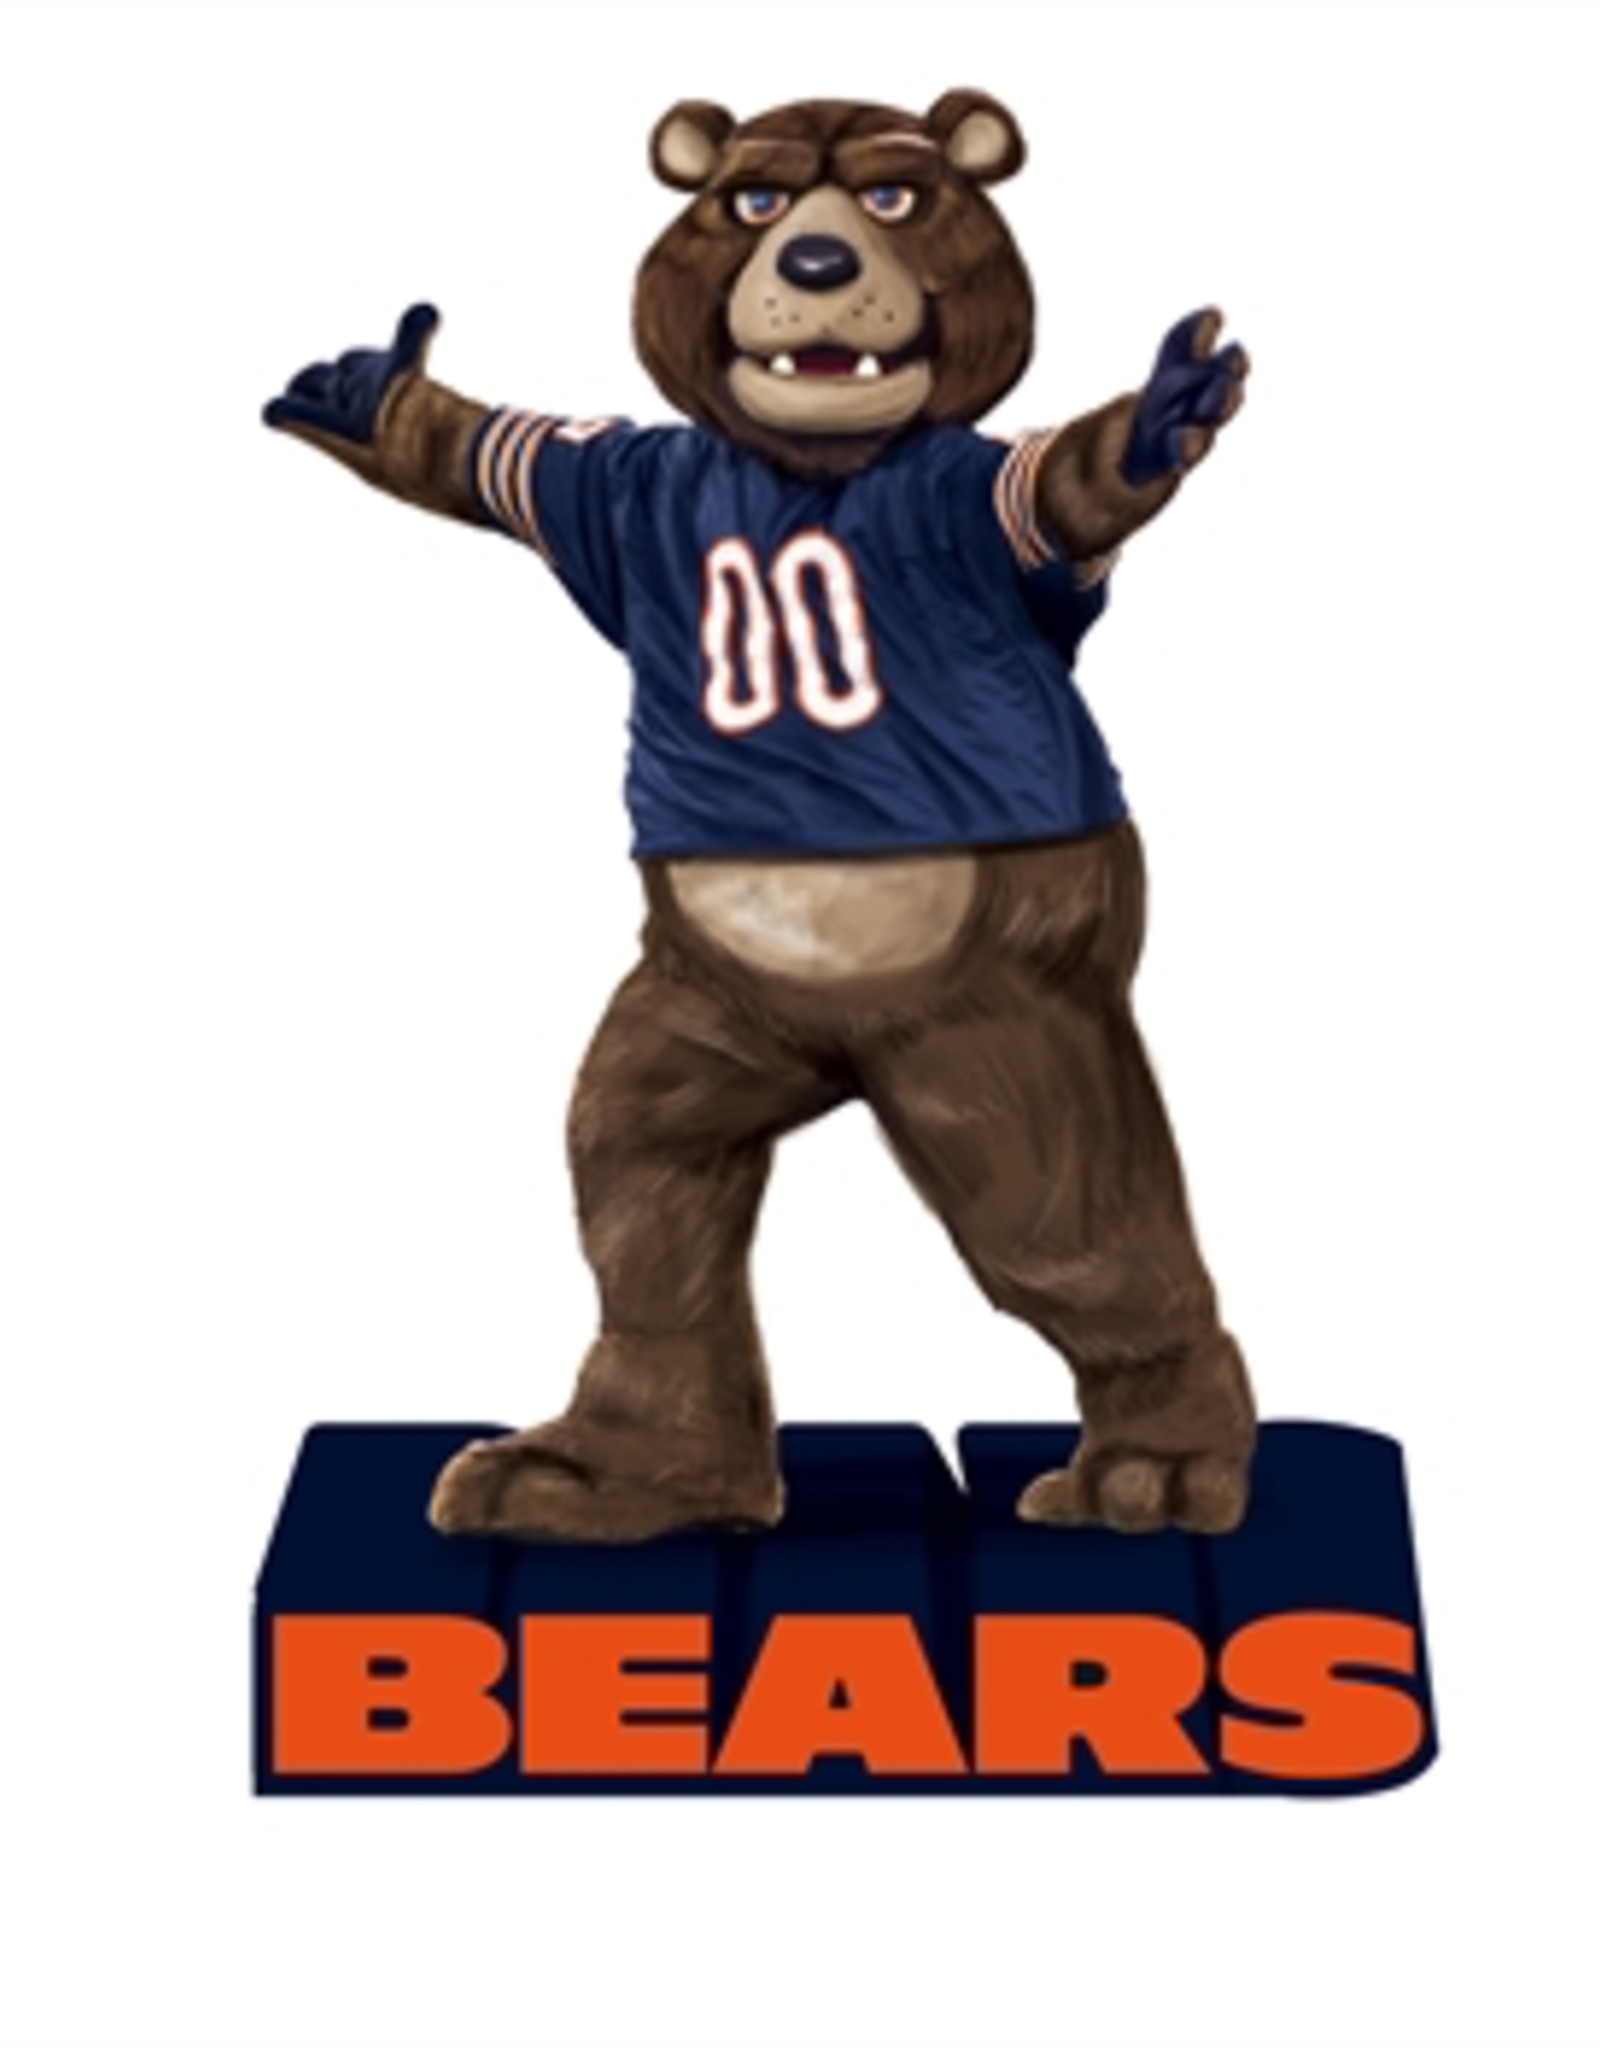 EVERGREEN Chicago Bears Mascot Statue